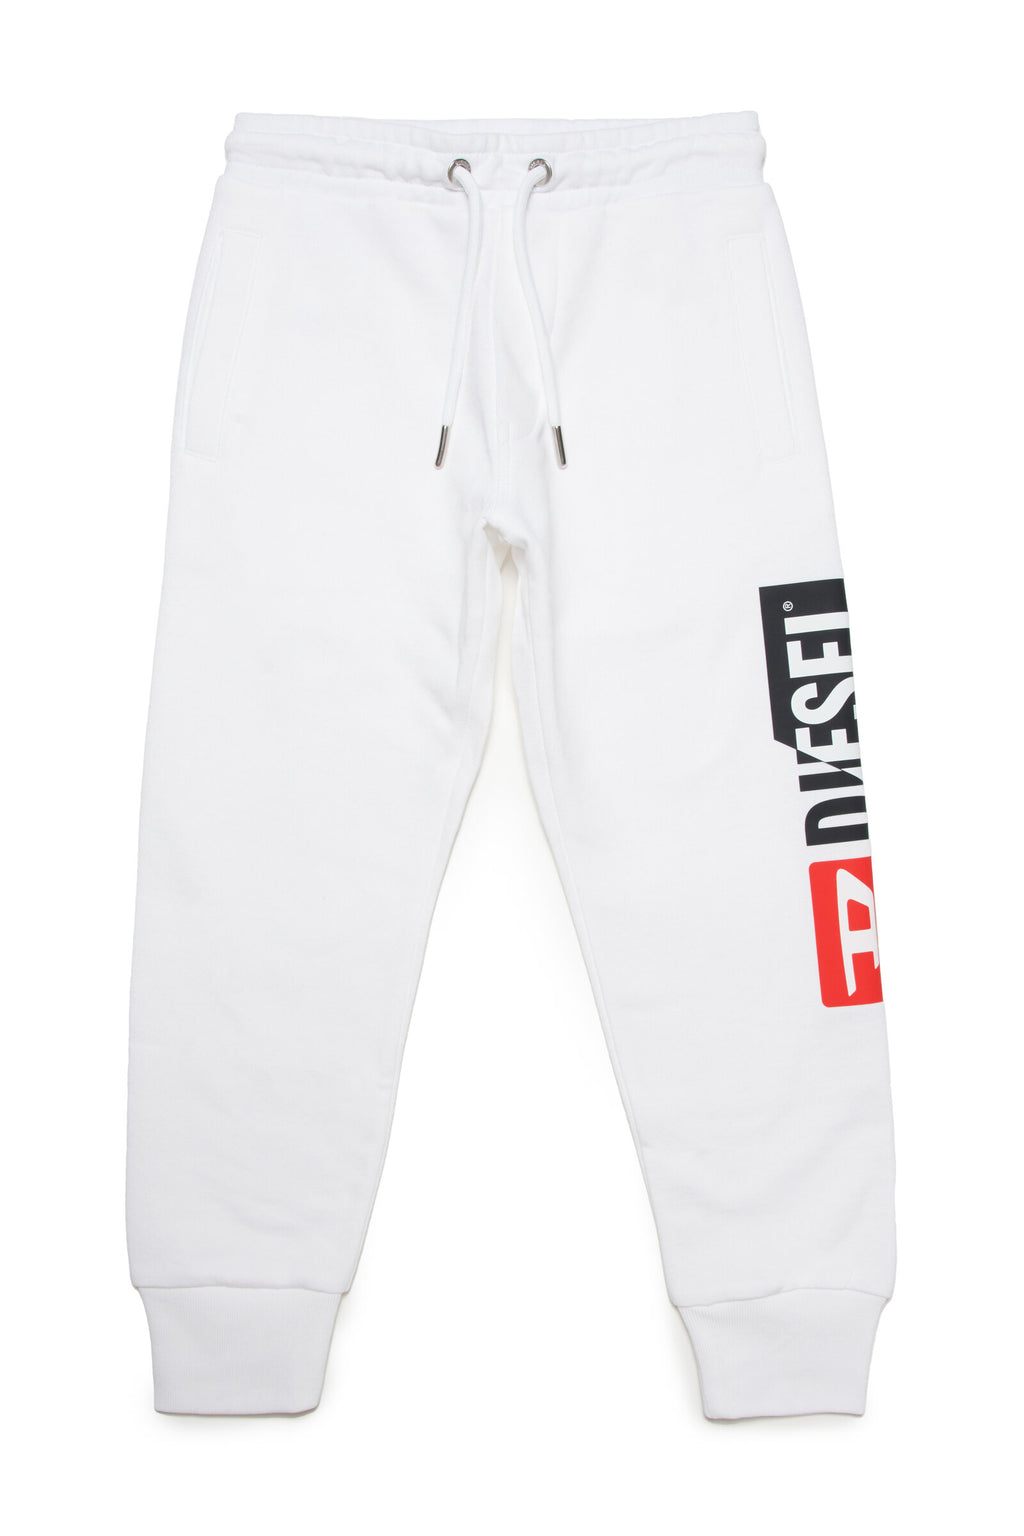 Pantalón jogger blanco con logo Diesel double